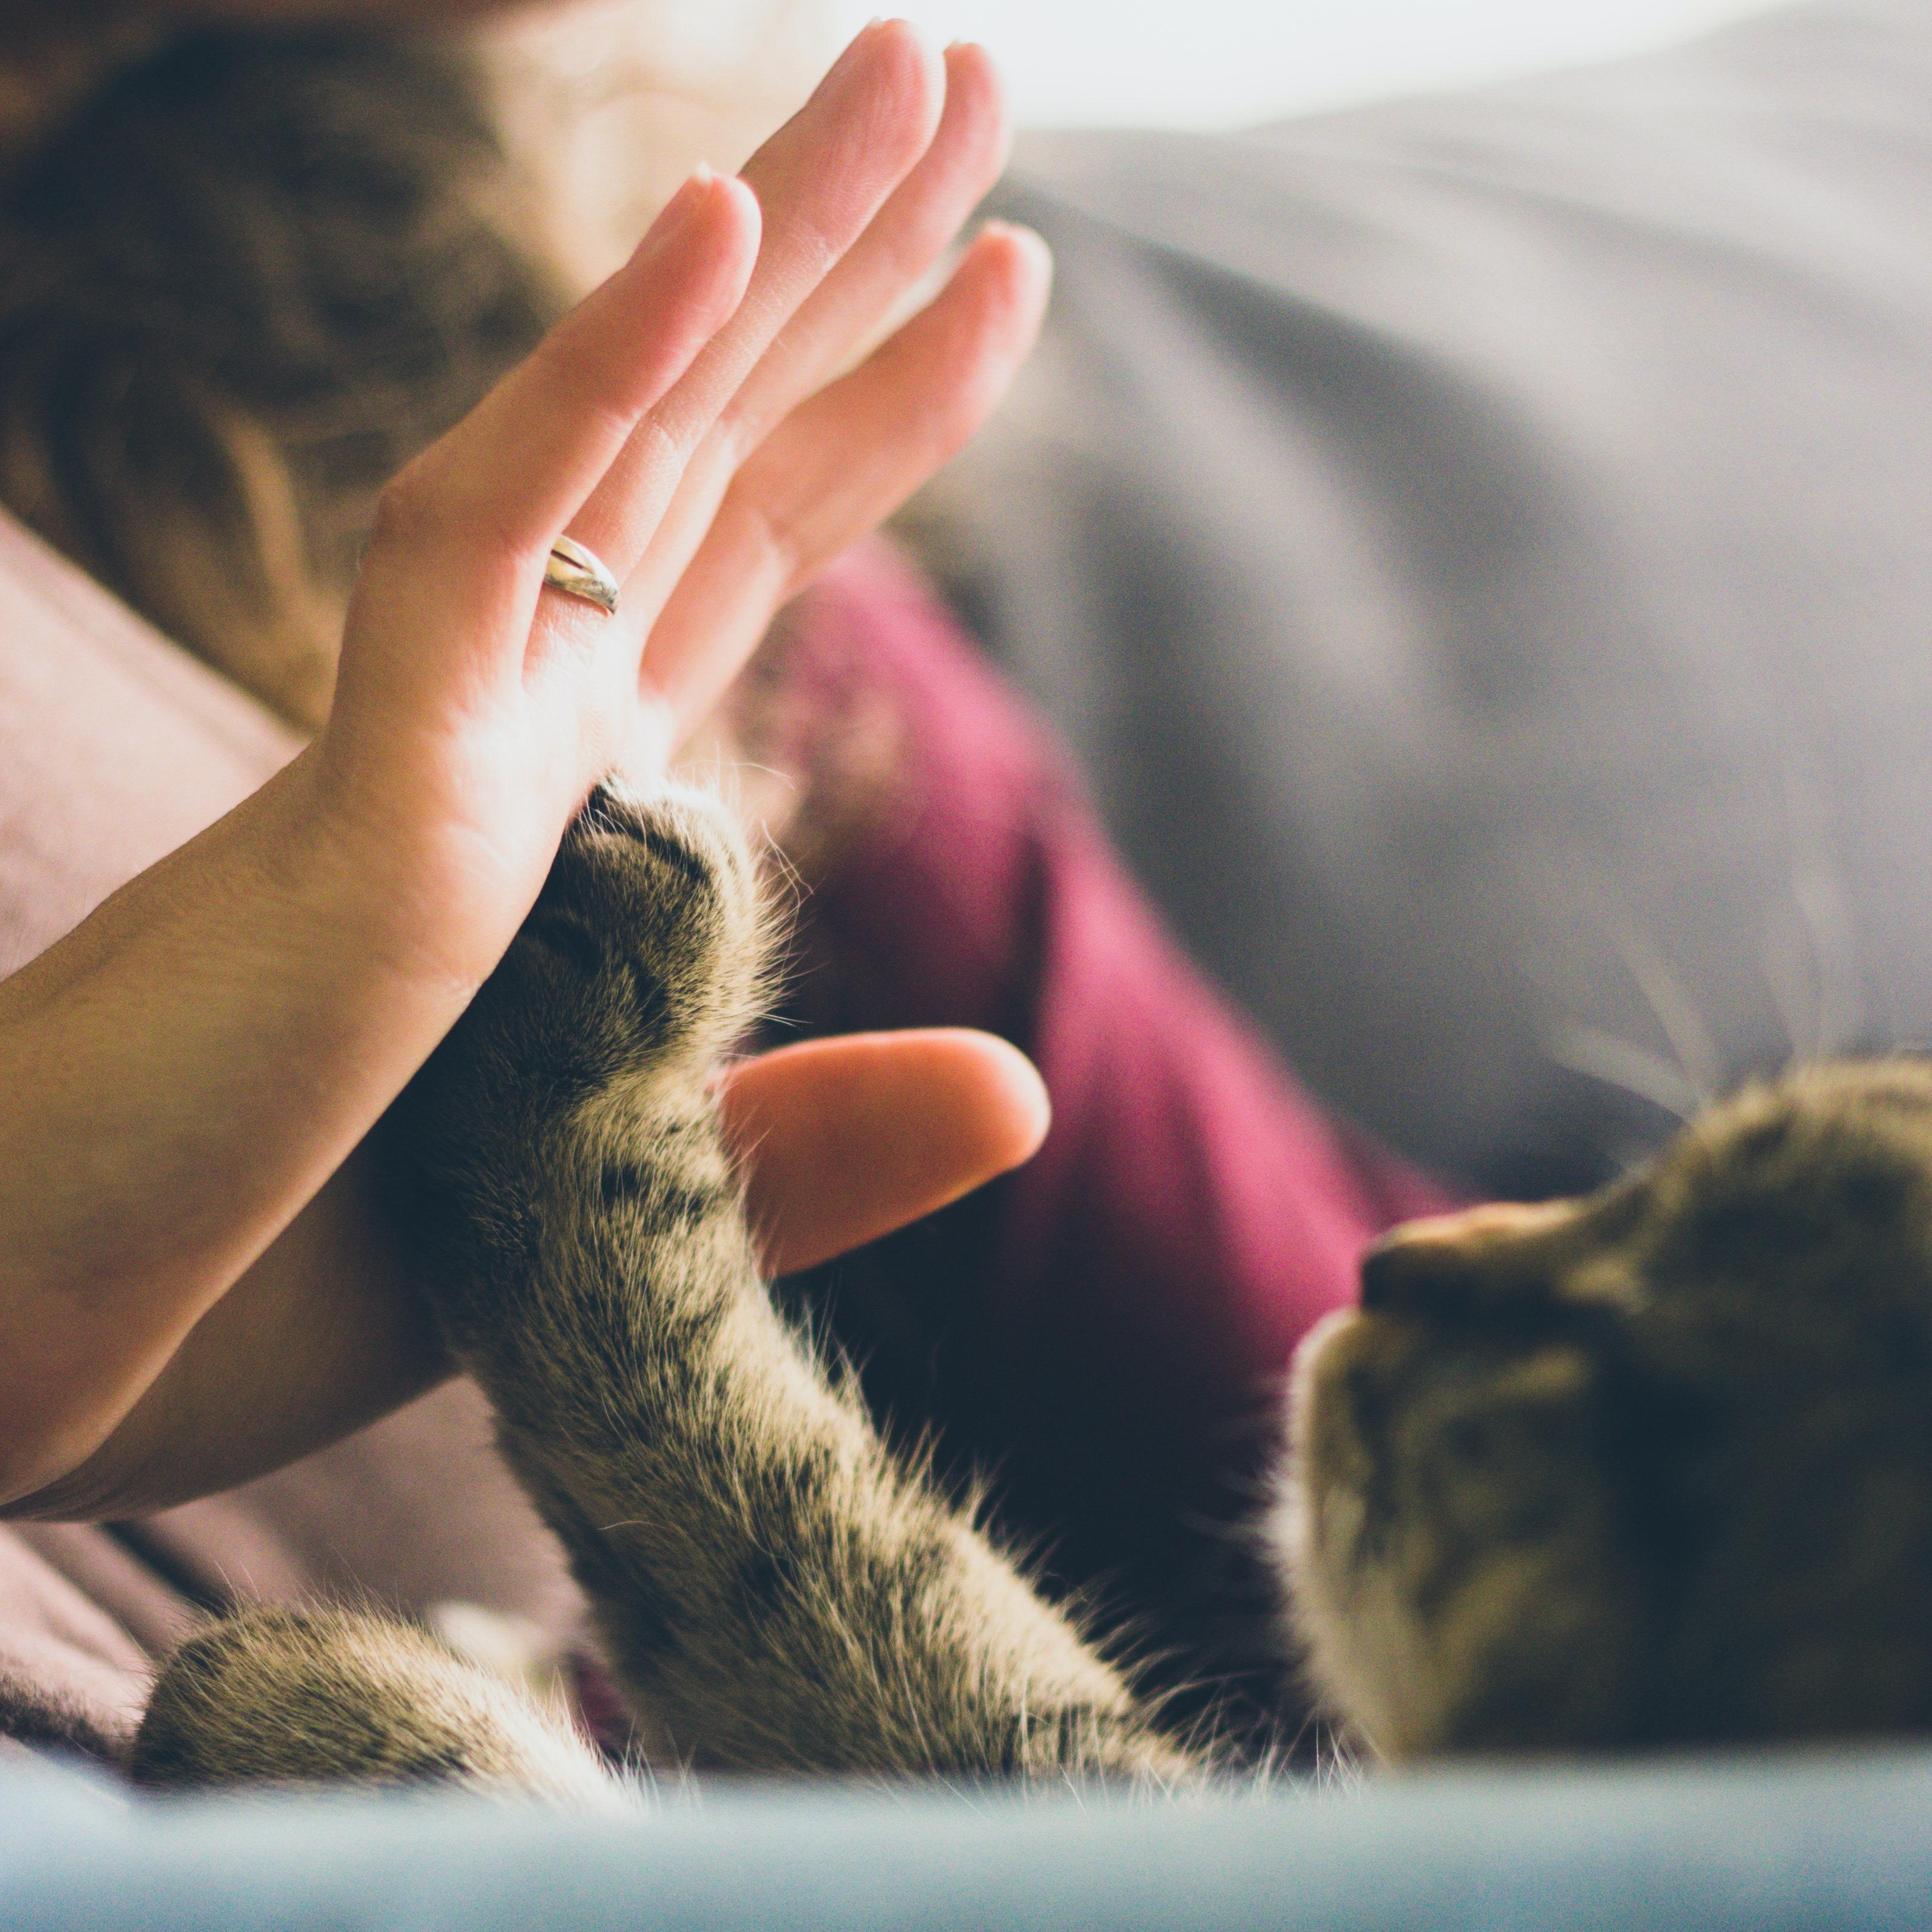 Мурчание как источник жизни: трогательные истории ко Дню кошек